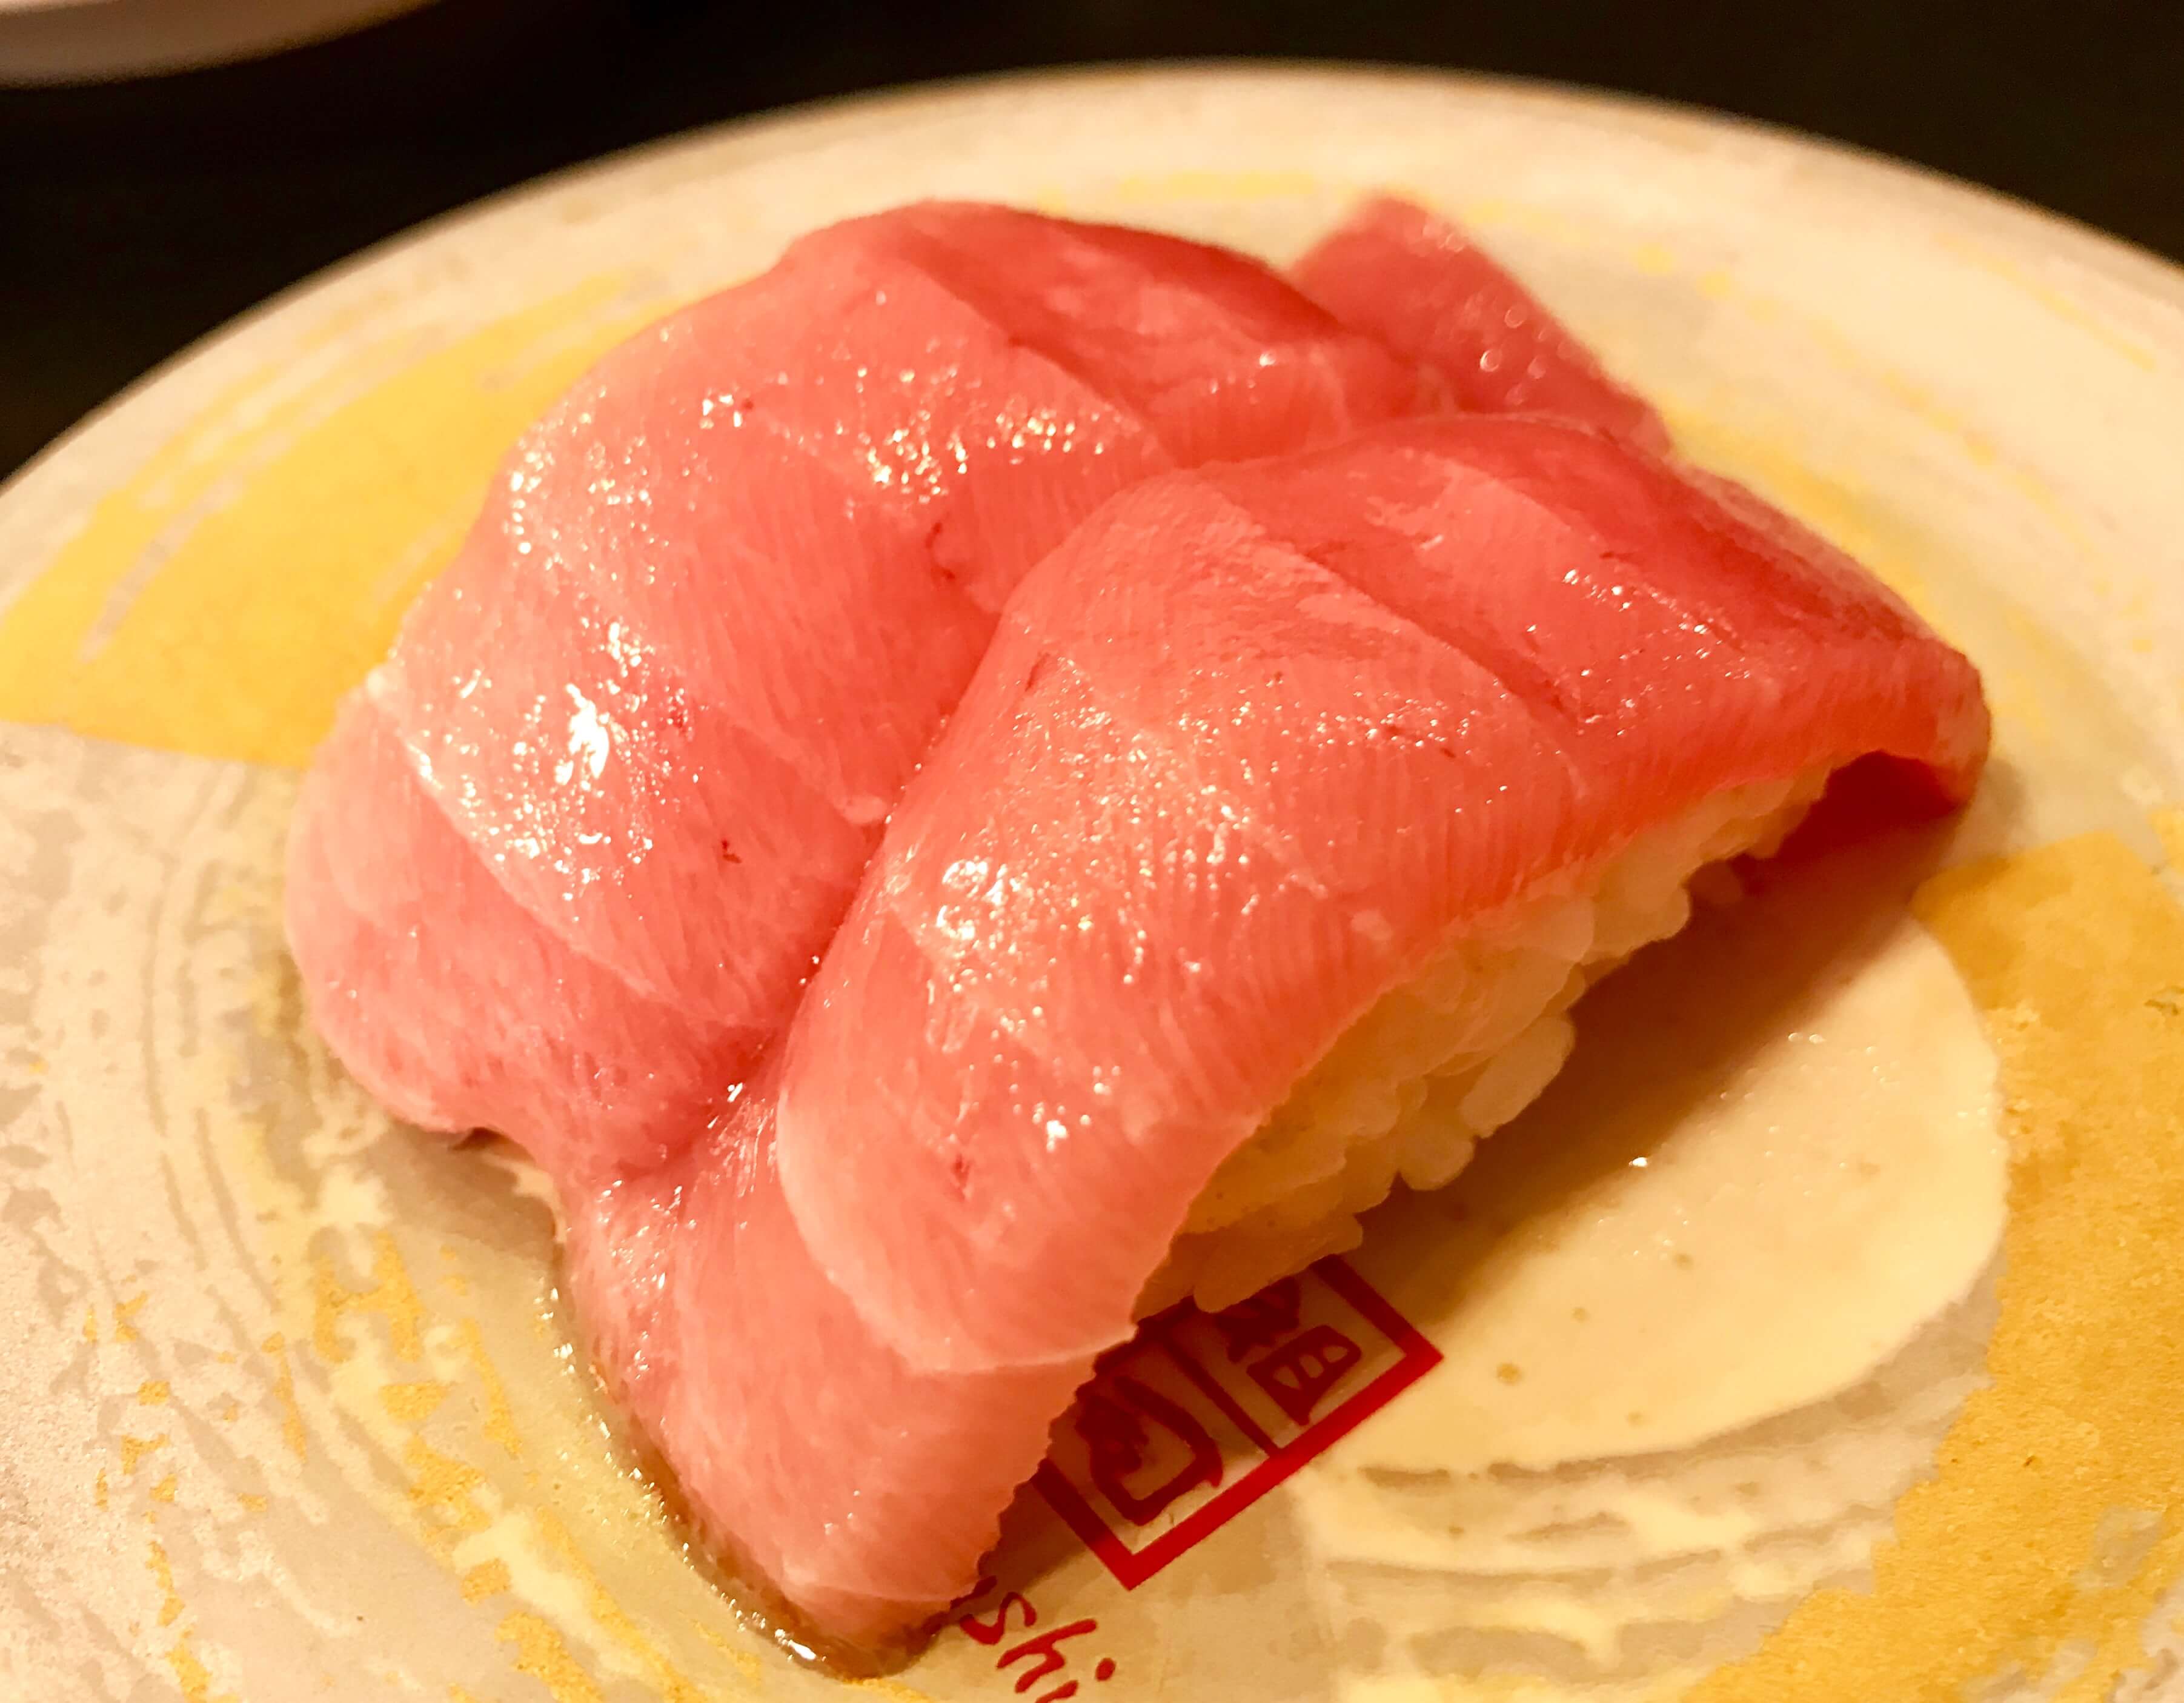 元祖寿司 秋葉原店はアキバで希少な回転寿司 築地直送鮮魚をお店でさばいたネタの美味しい握り ぼちぼち歩く